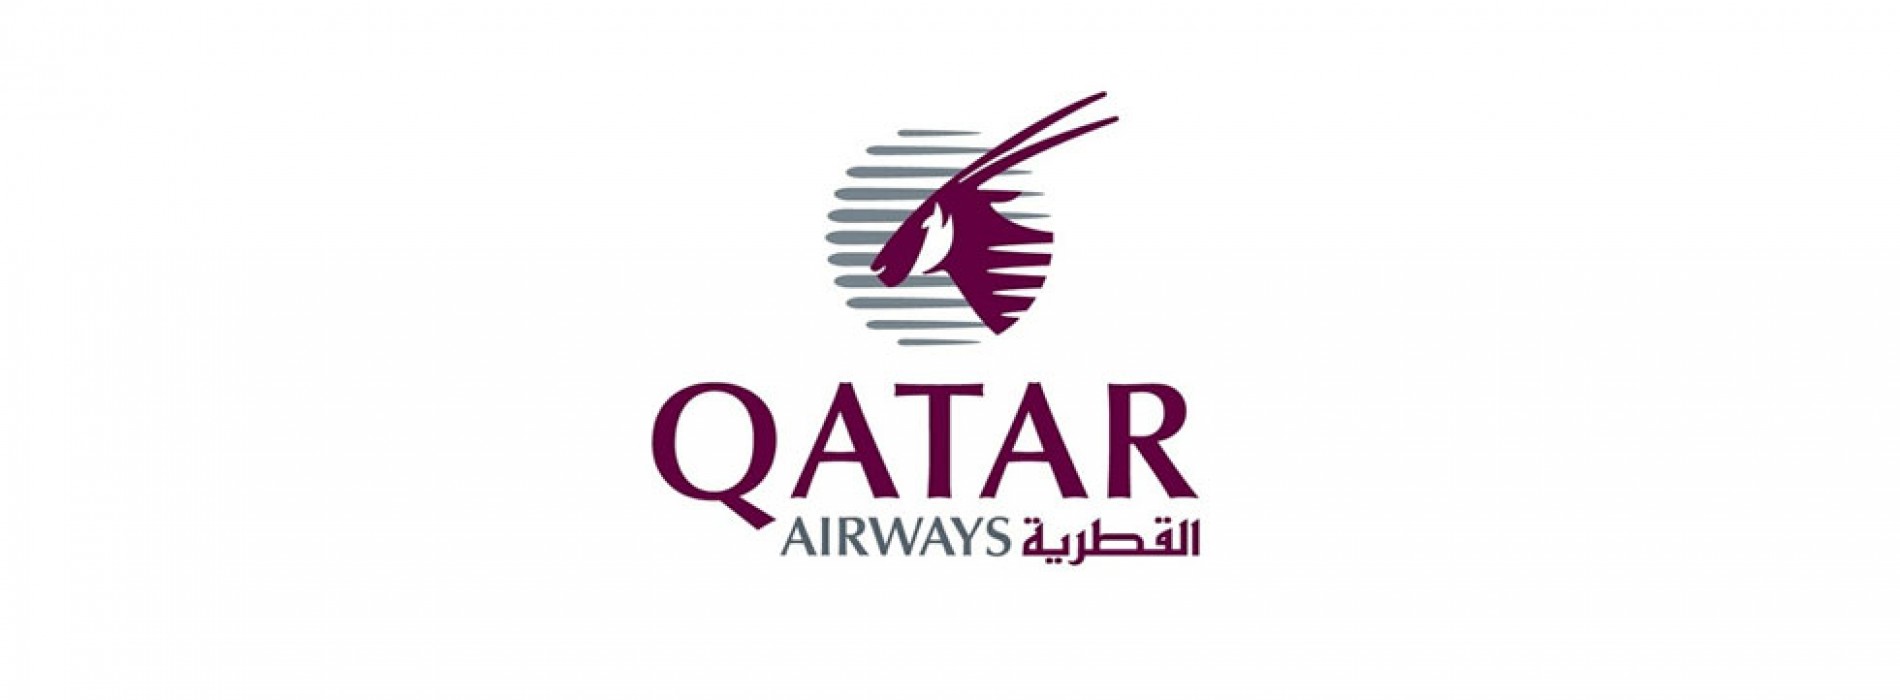 Qatar Airways to being Airbus A380 to Sydney, Australia